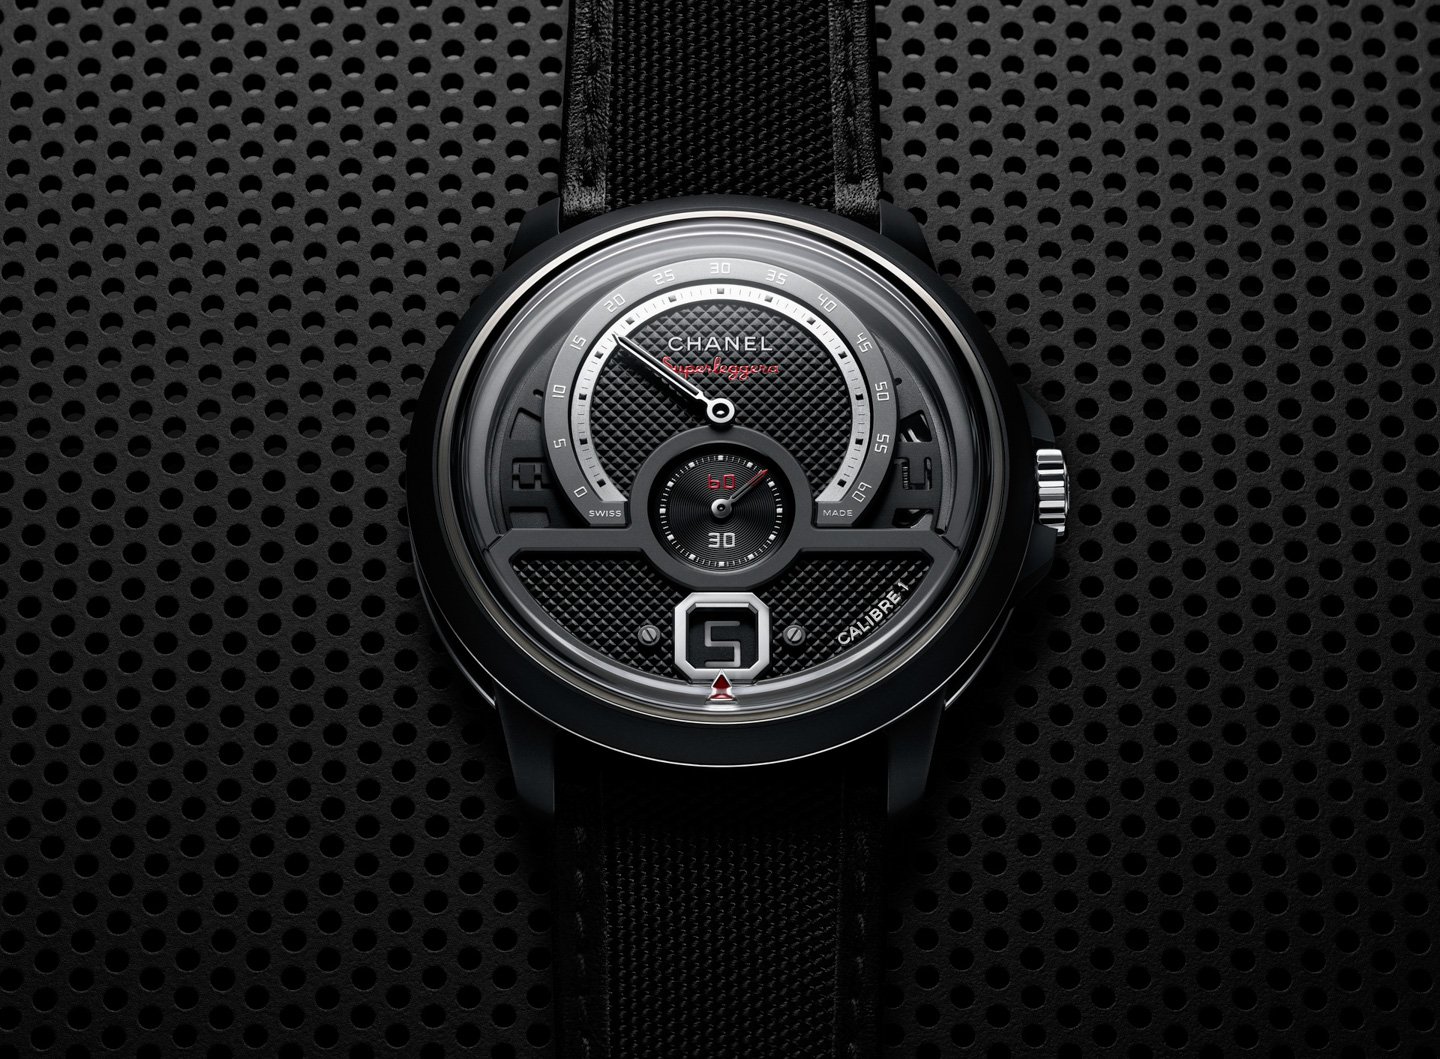 Часы Chanel Monsieur Superleggera Edition - автомобильный спорт встречает парижскую изысканность